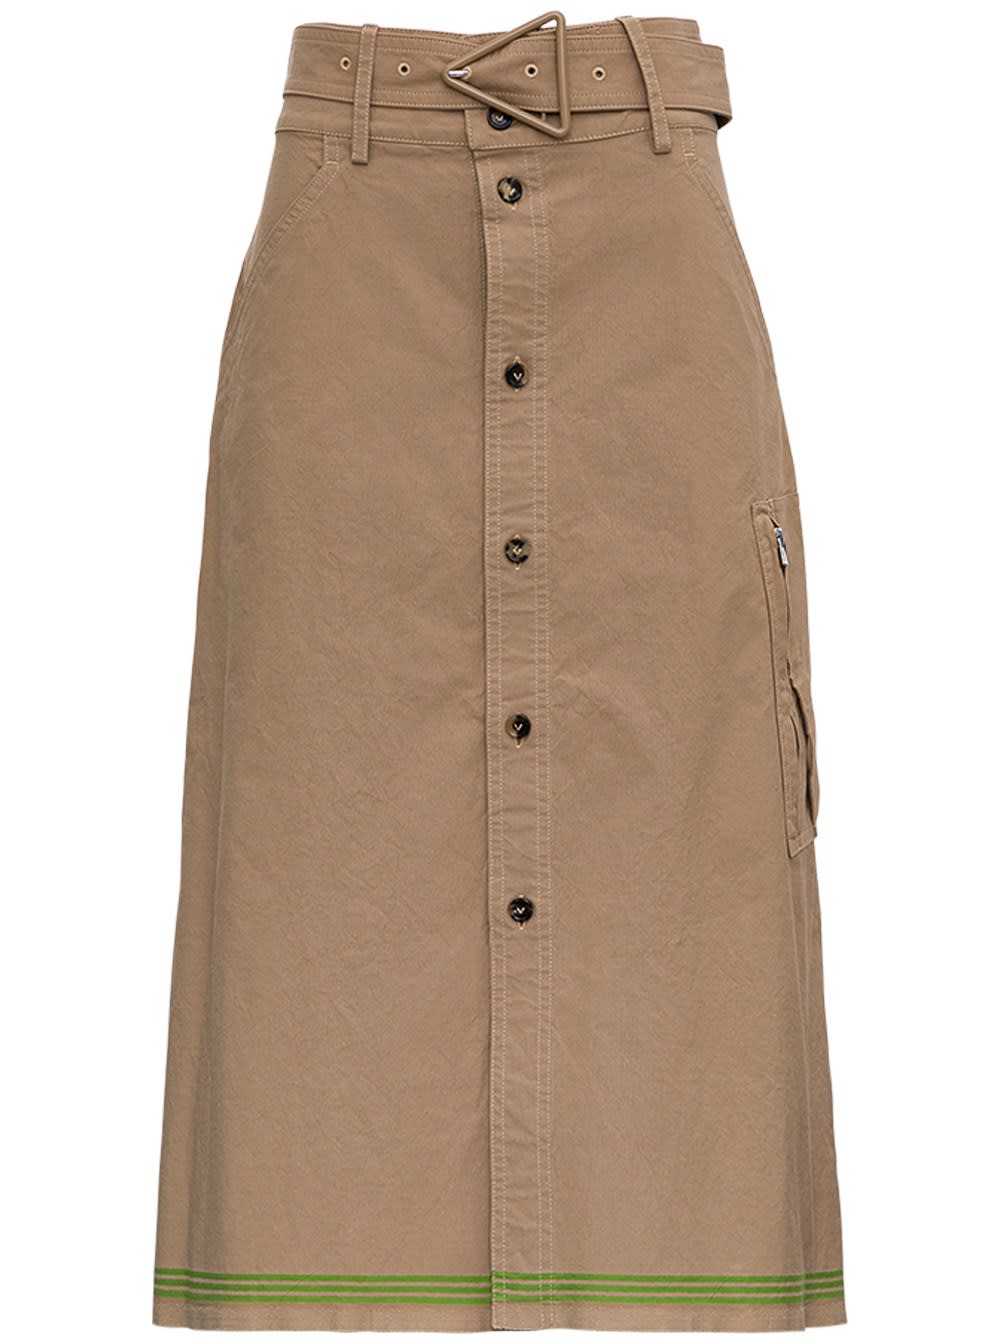 Bottega Veneta Beige Cotton Skirt With Belt